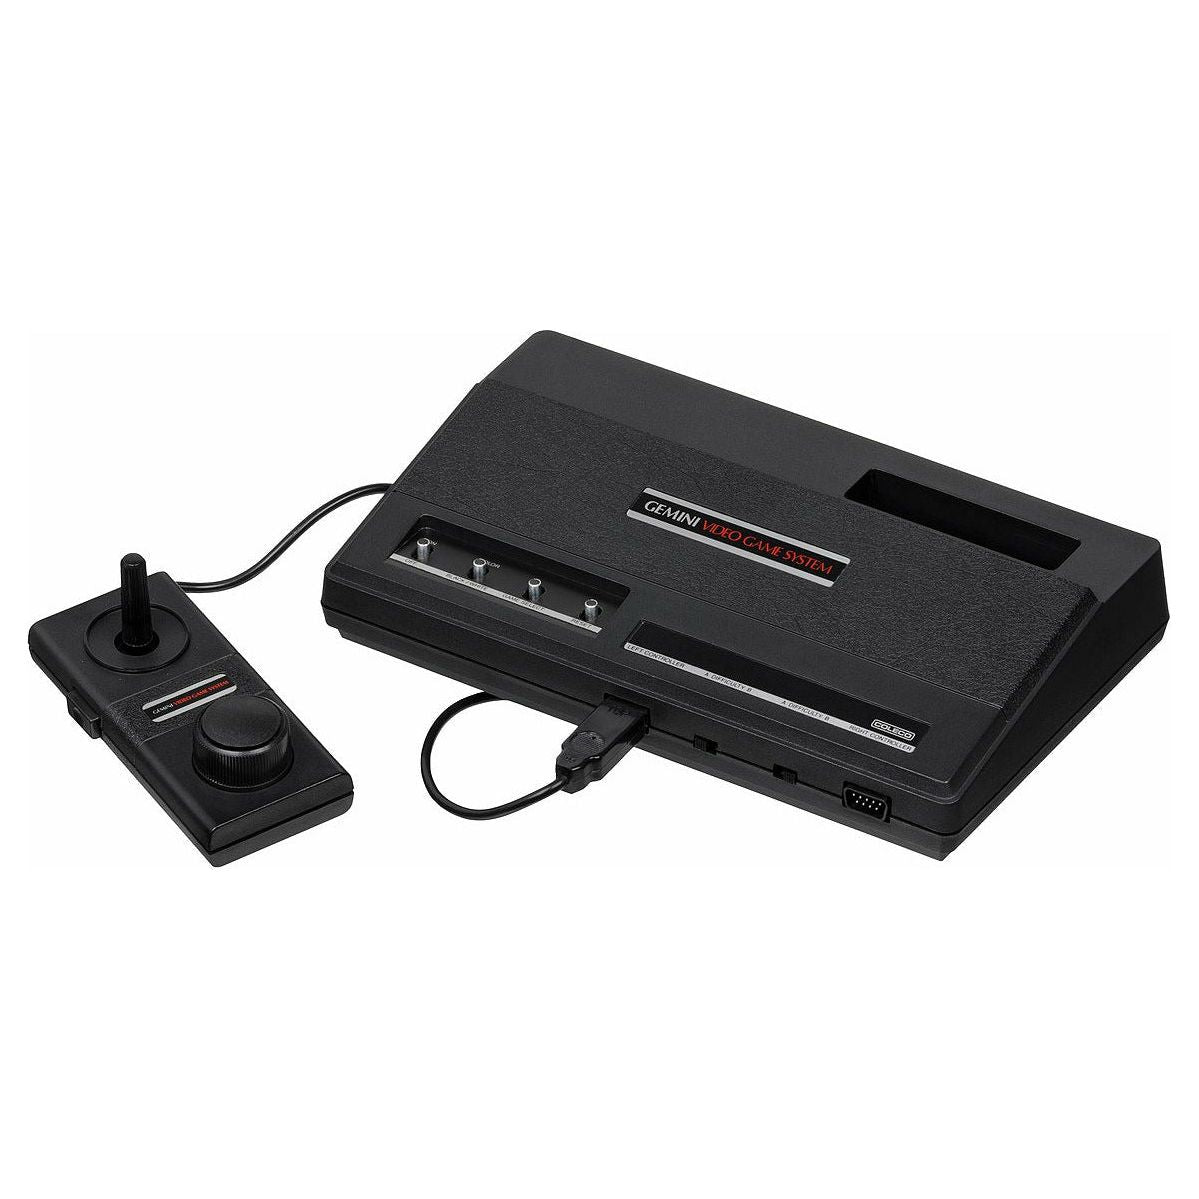 Système Coleco Gemini (clone Atari 2600)